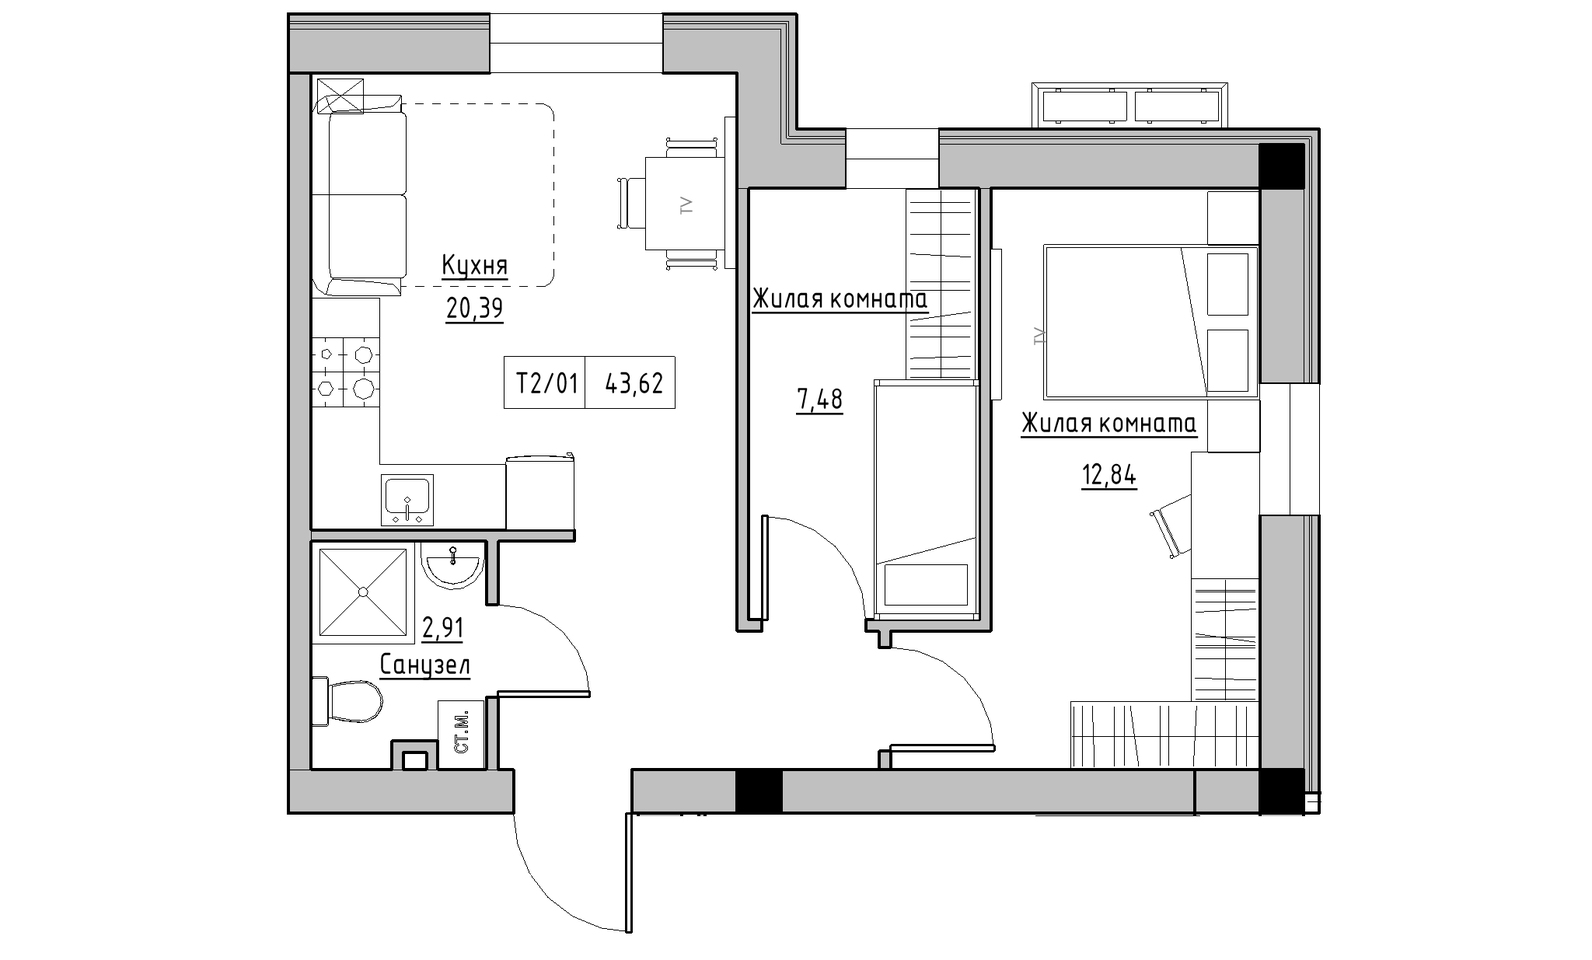 Планировка 2-к квартира площей 43.62м2, KS-014-01/0008.